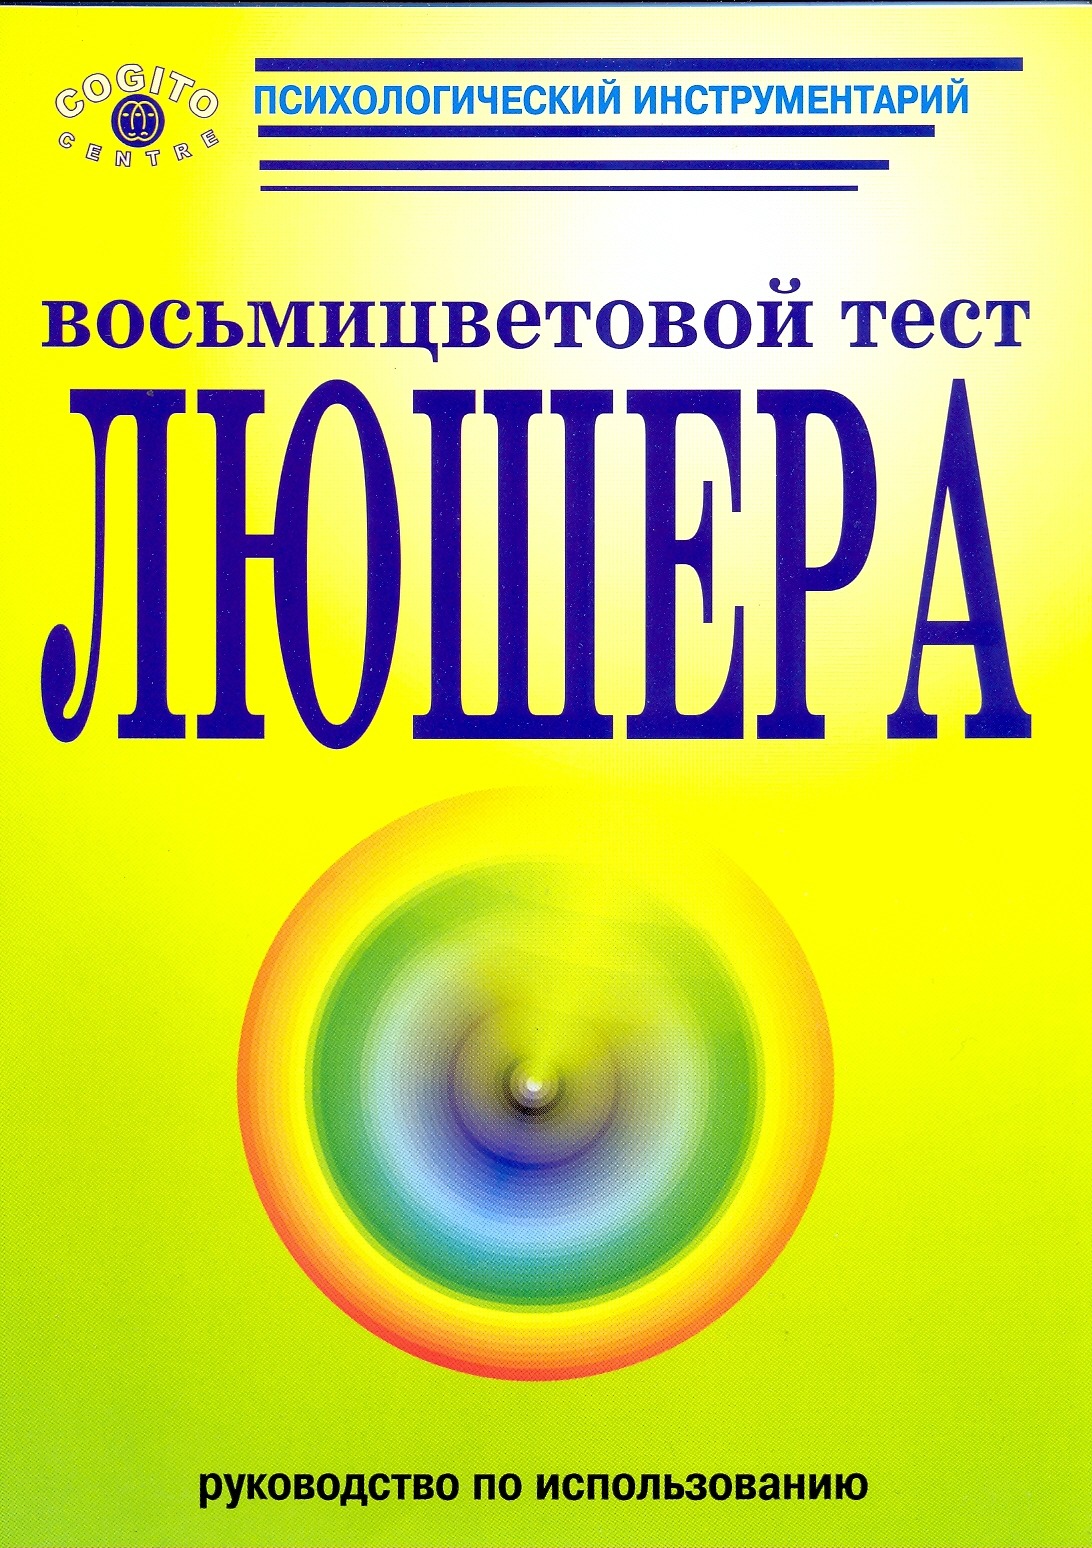 Обложка книги "Руководство по использованию восьмицветового теста Люшера"